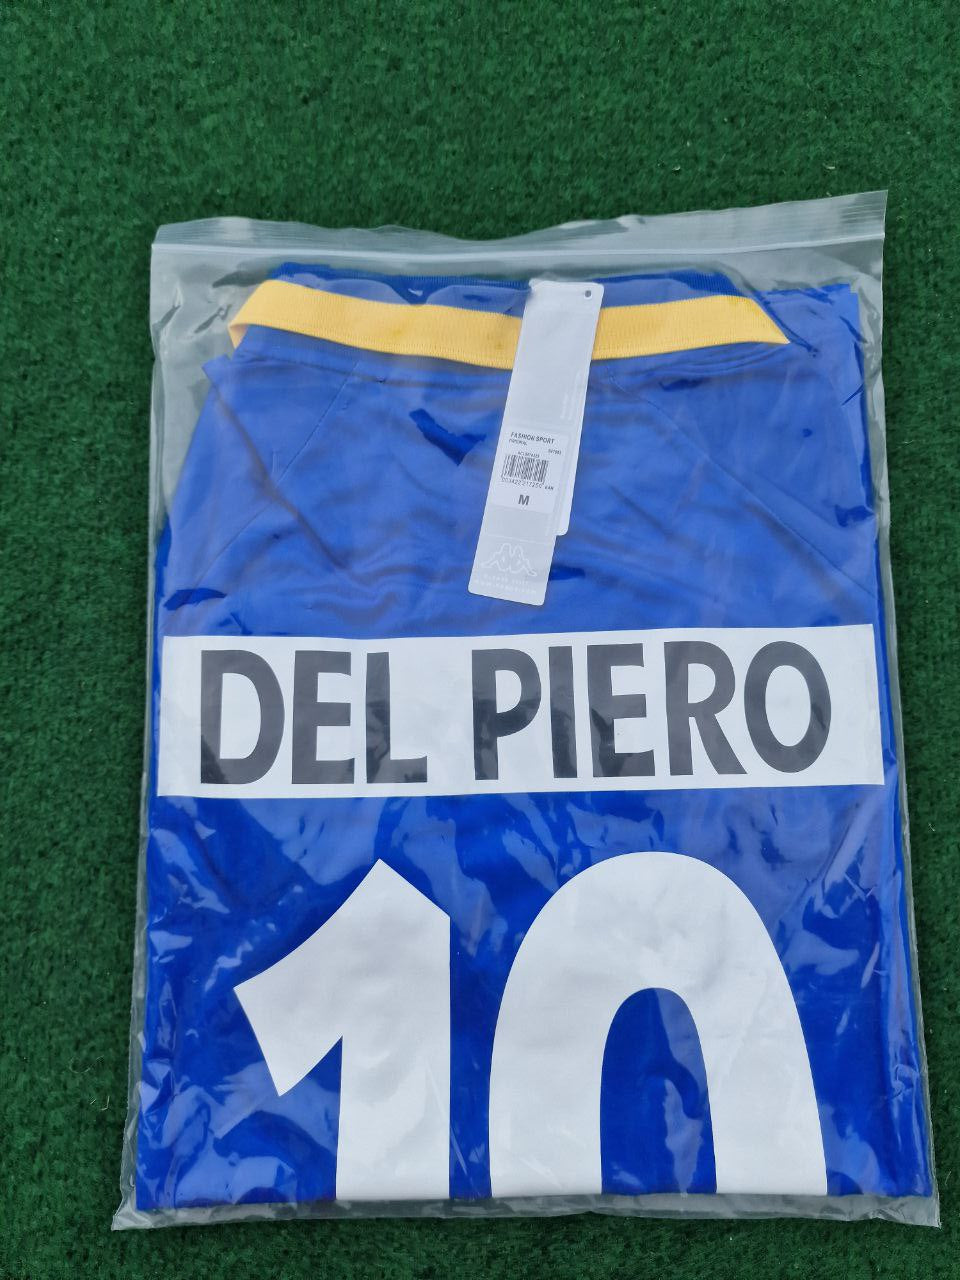 Del Piero Juventus Blue Retro Football Jersey